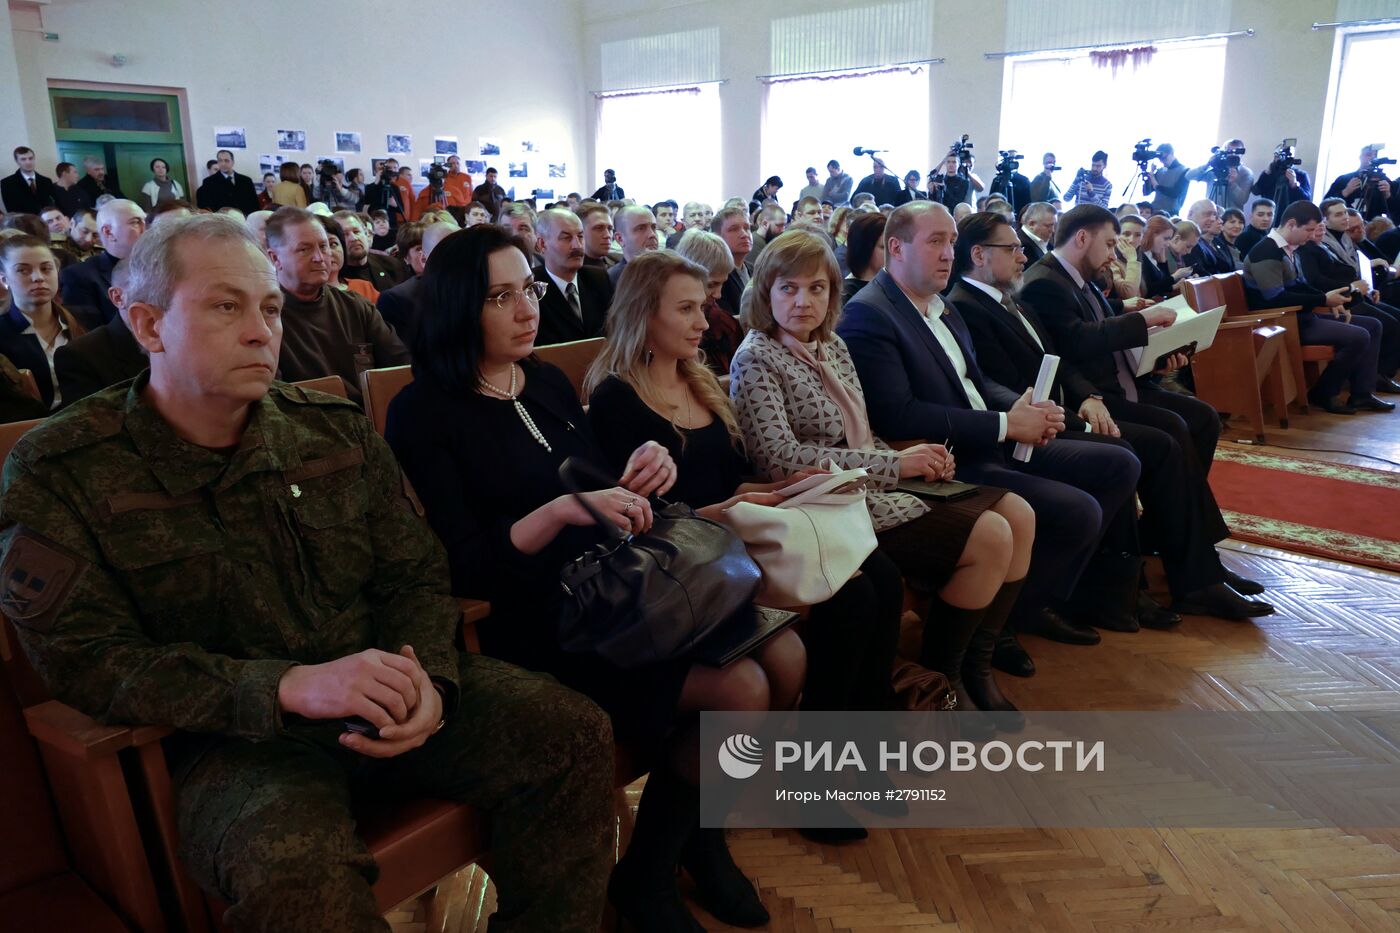 Форум "Минские договоренности как основа суверенитета Донбасса" состоялся в Дебальцево Донецкой области